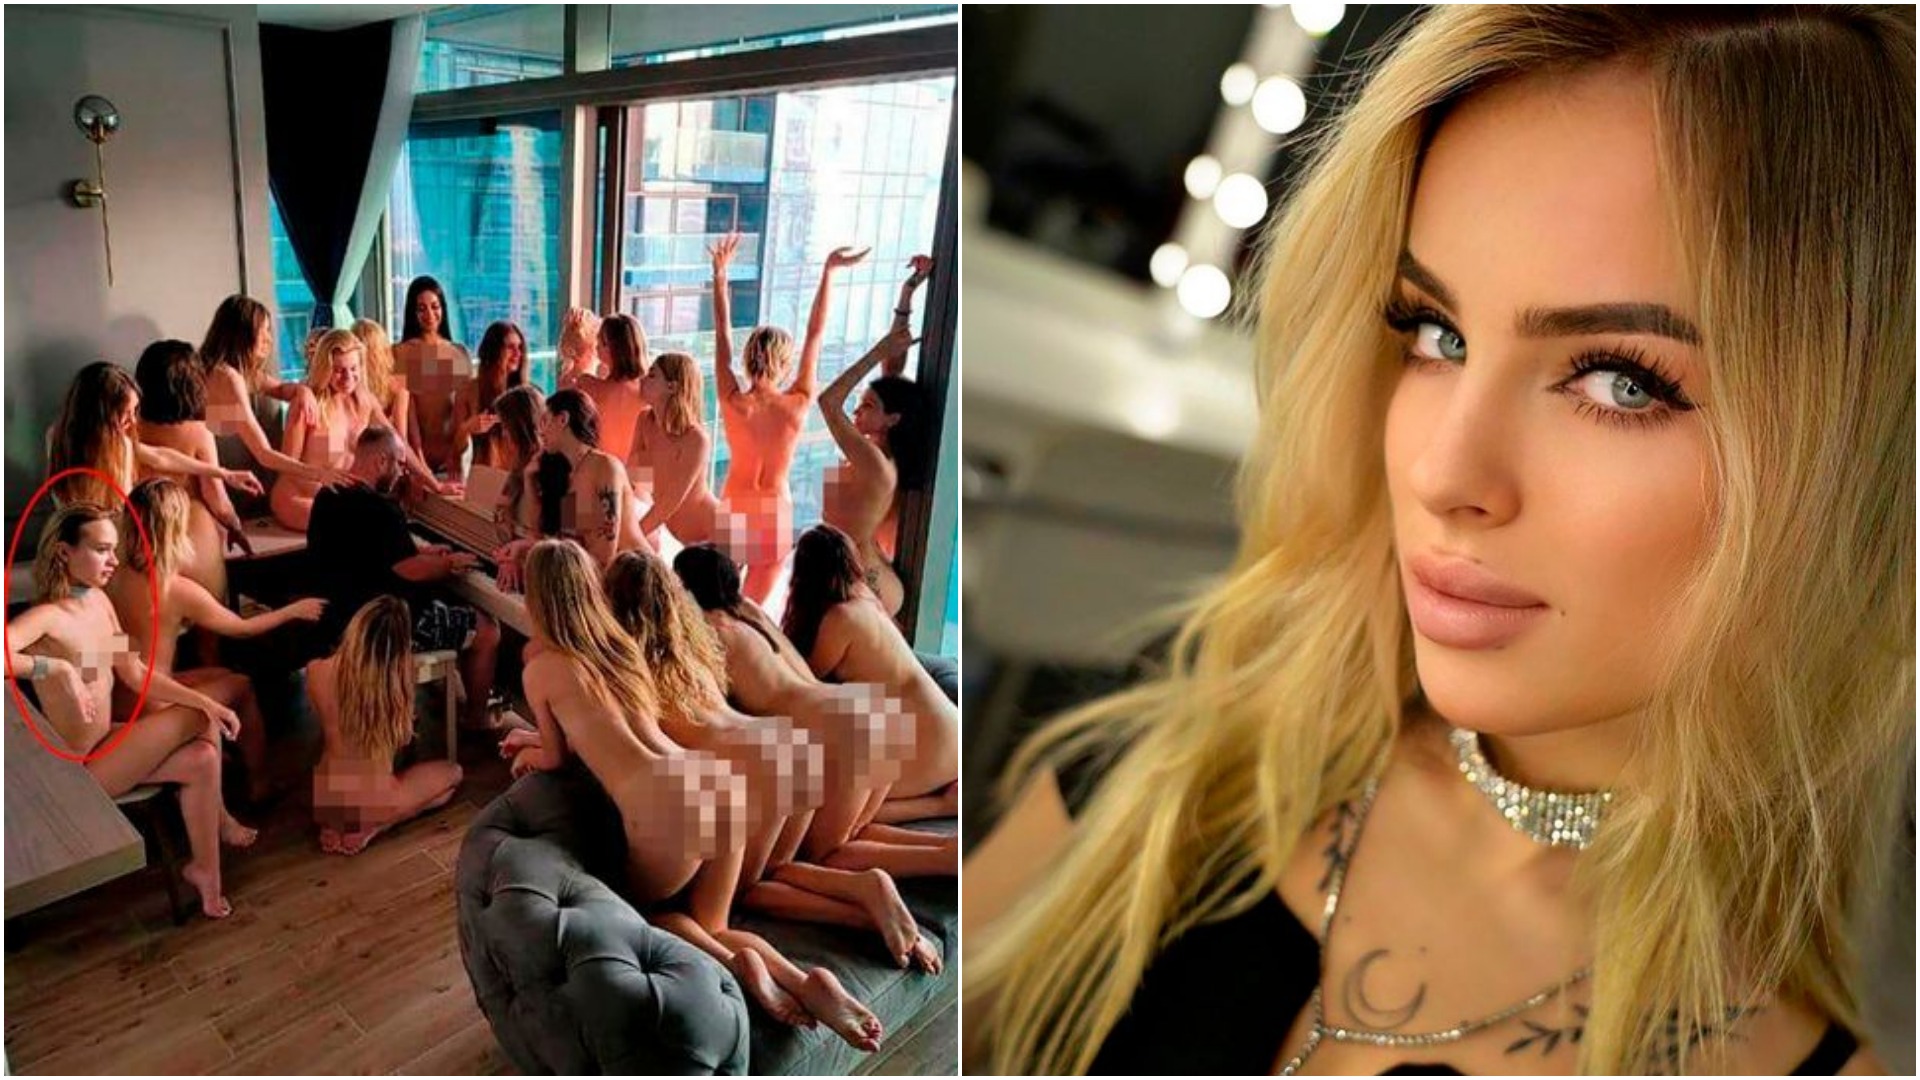 Una dintre „modelele” arestate pentru pozele nud din Dubai a făcut dezvăluiri surprinzătoare: „Am fost forțate”